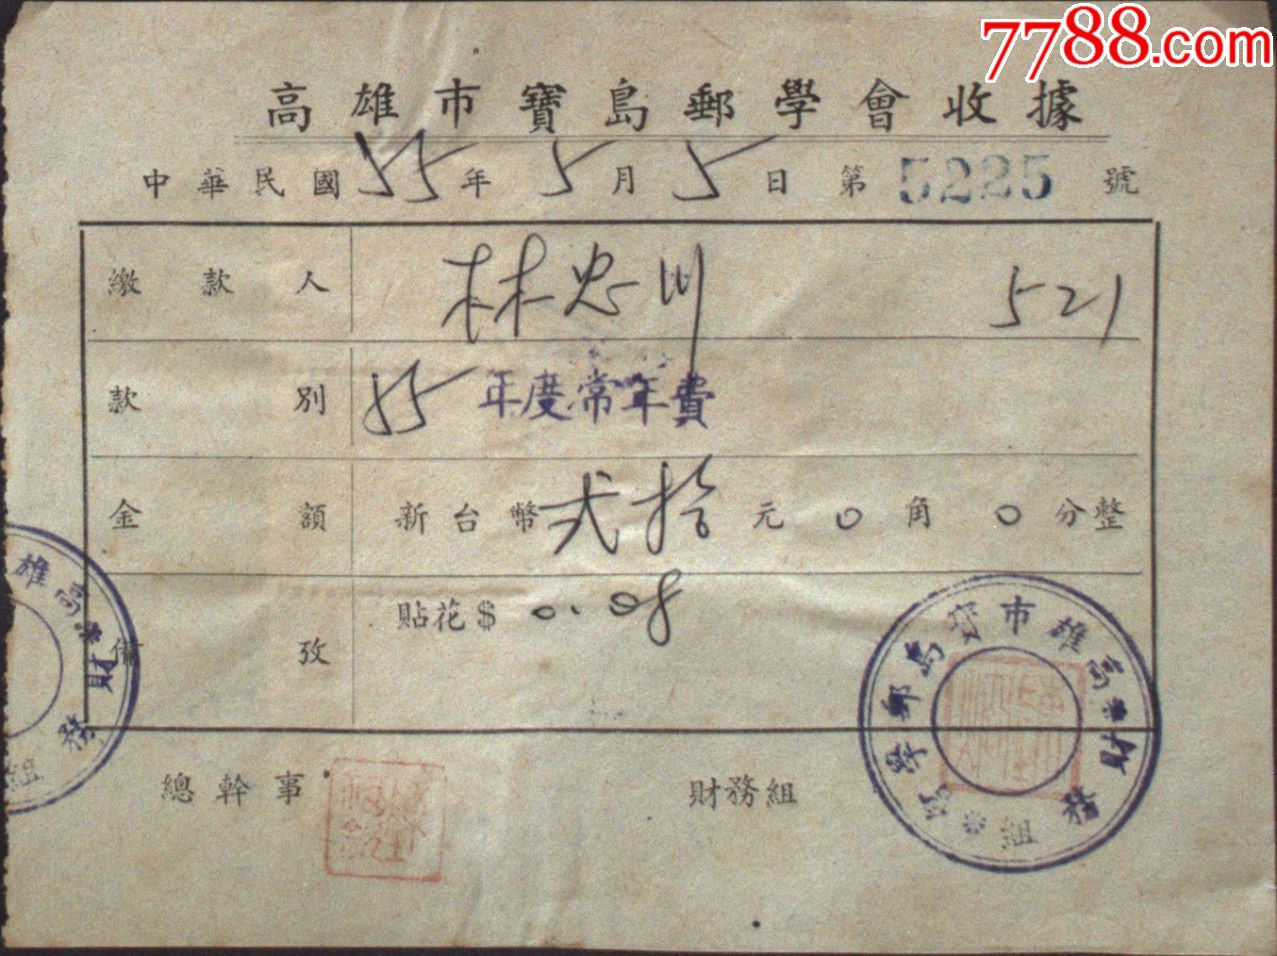 台湾票据单据收据税票台湾宝岛邮学会收据一件